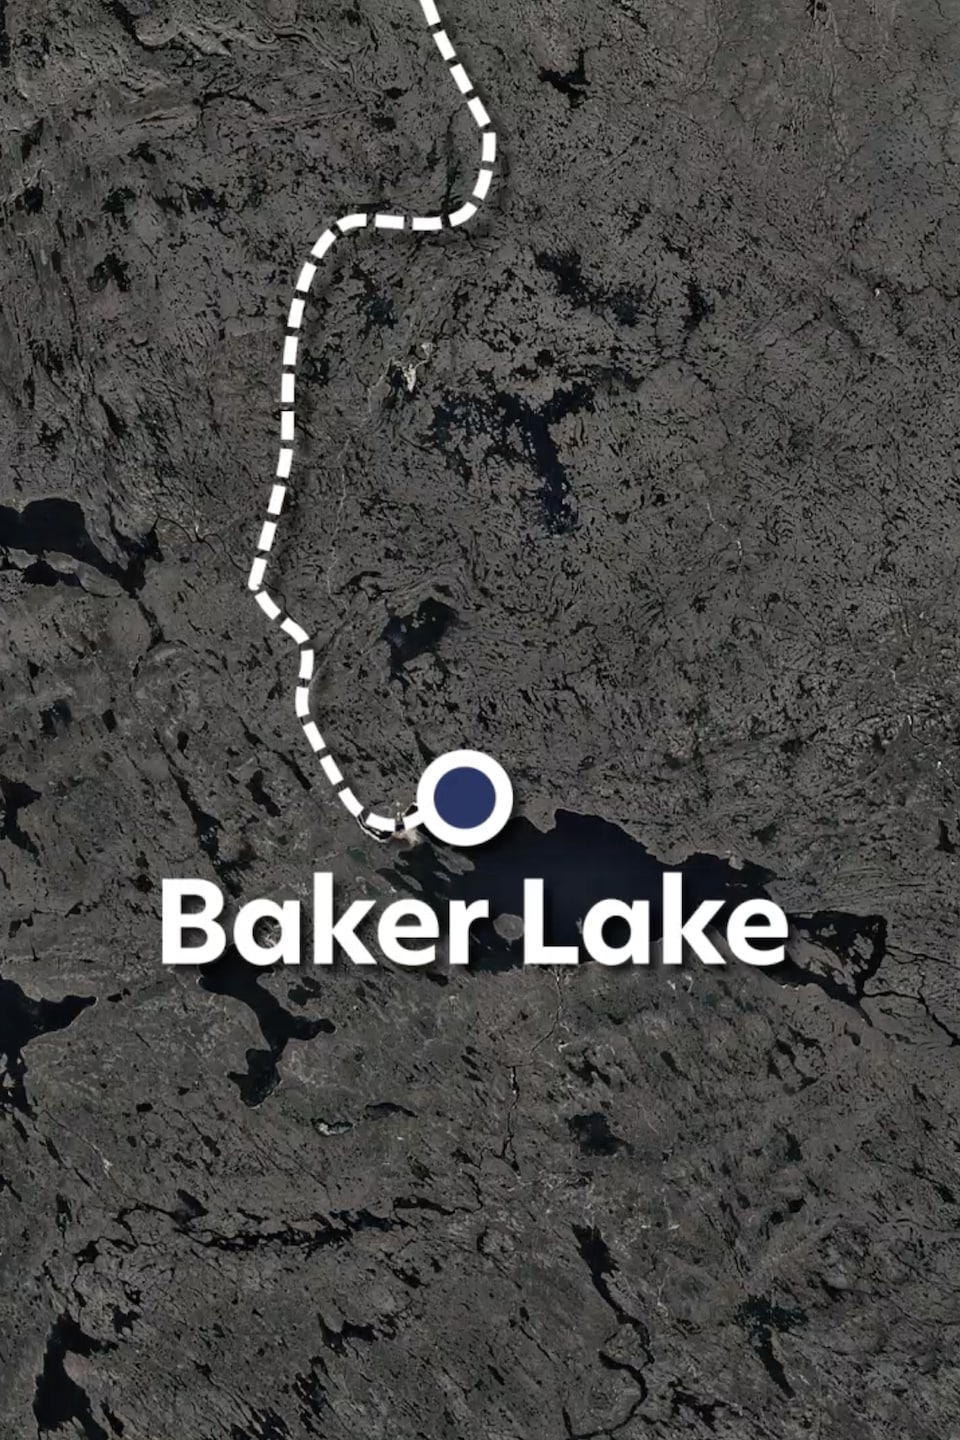 Carte satellite indiquant Baker Lake sur le parcours des aventuriers